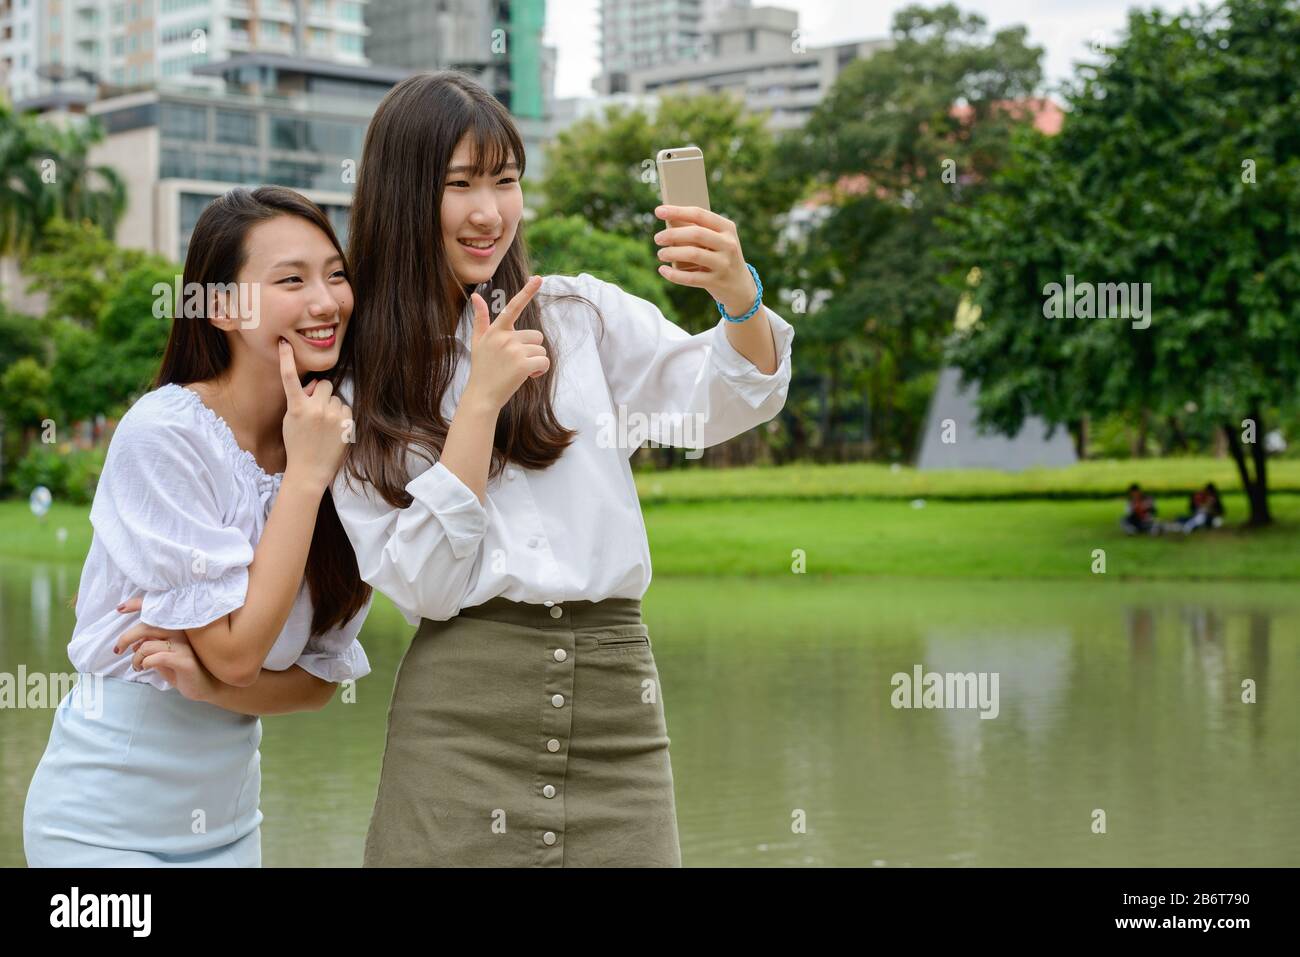 Zwei glückliche junge, schöne asiatische Teenager-Mädchen, die selfie im Park zusammen nehmen Stockfoto